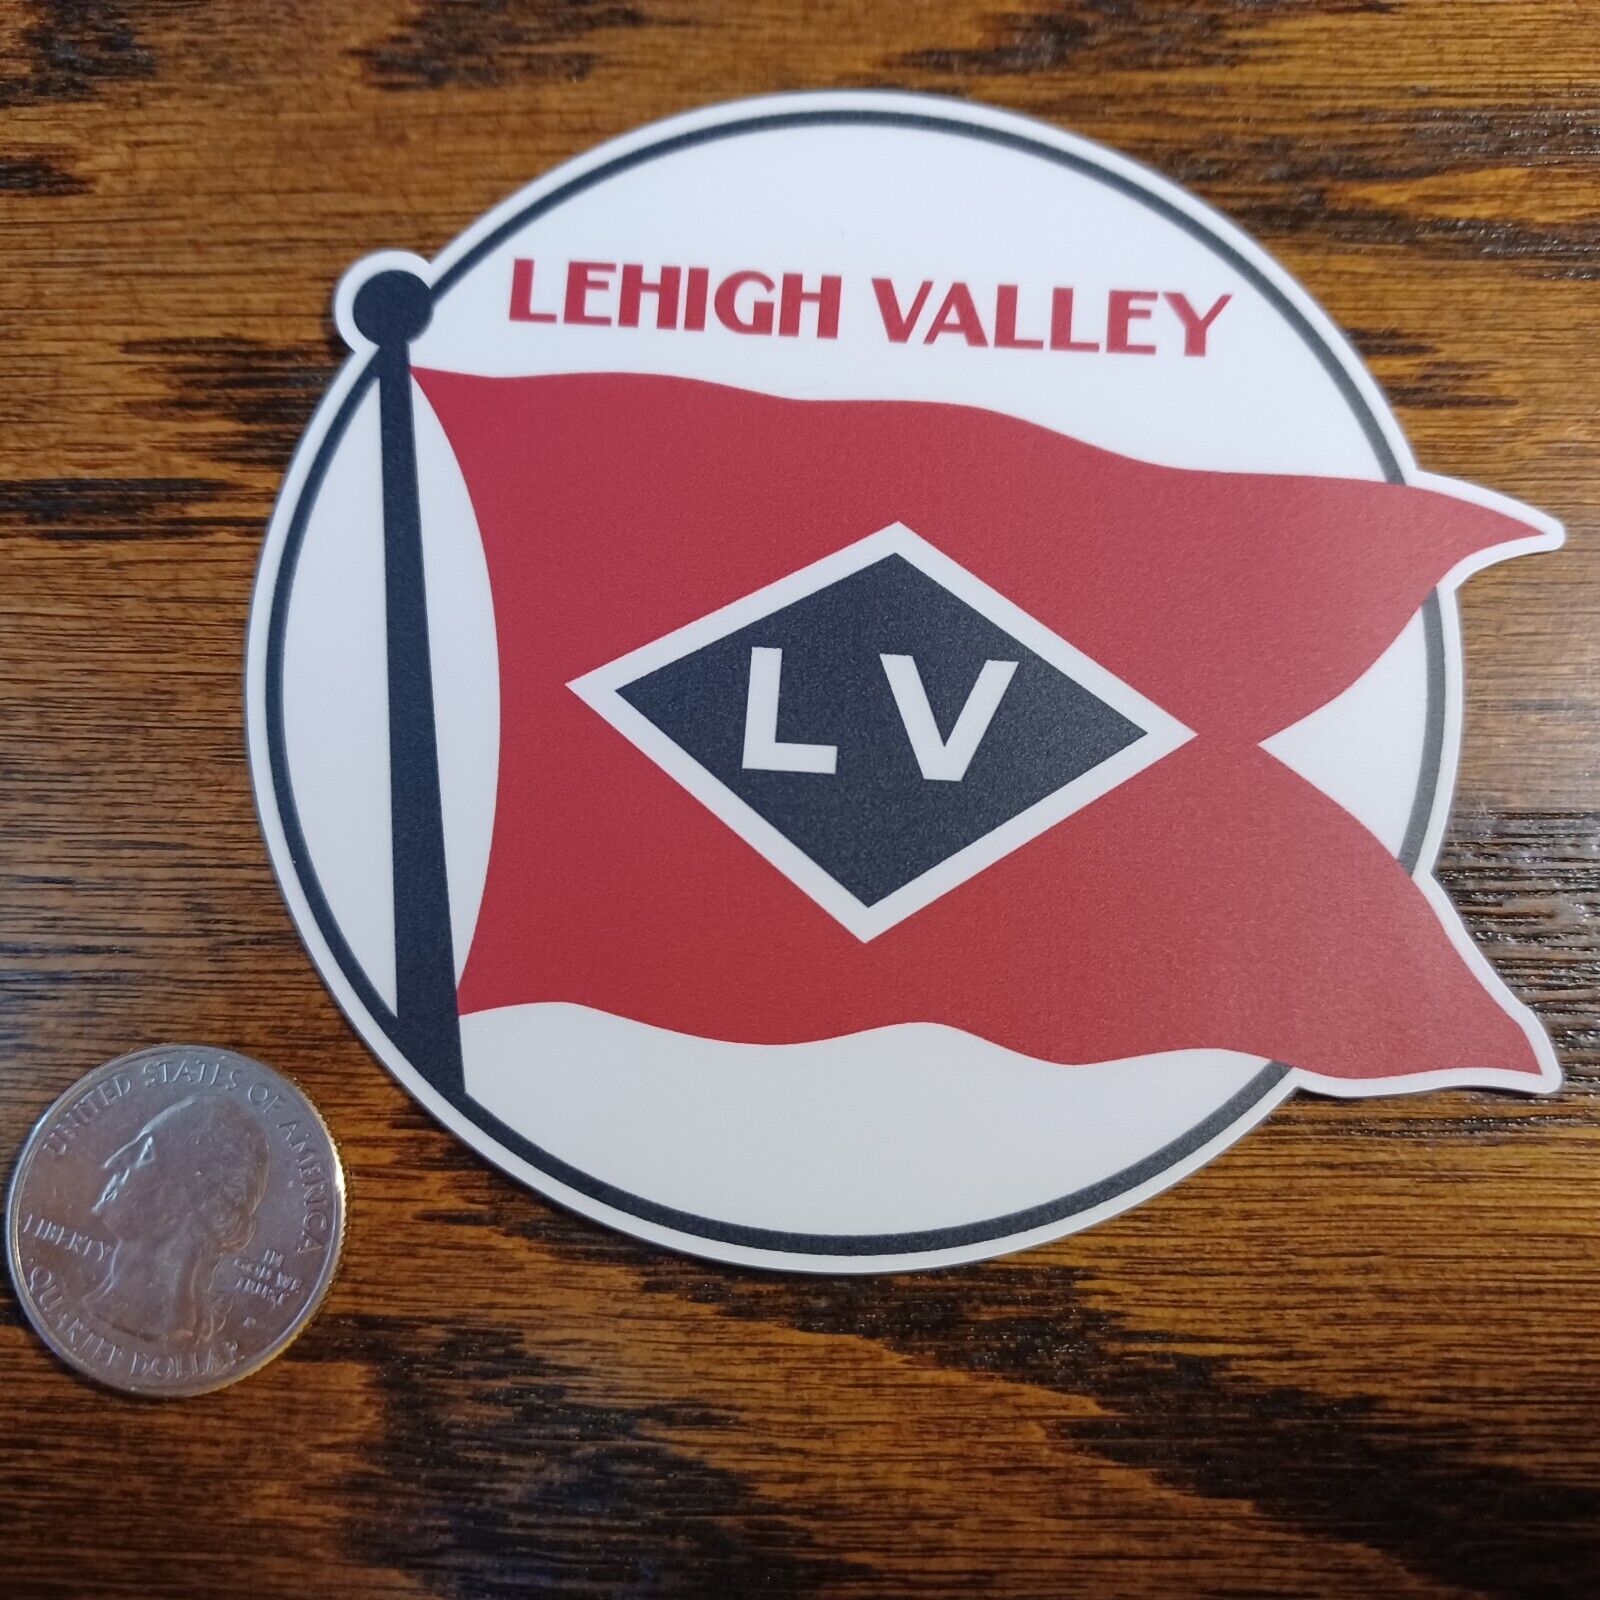 Lehigh Valley Railroad laminated die-cut vinyl sticker